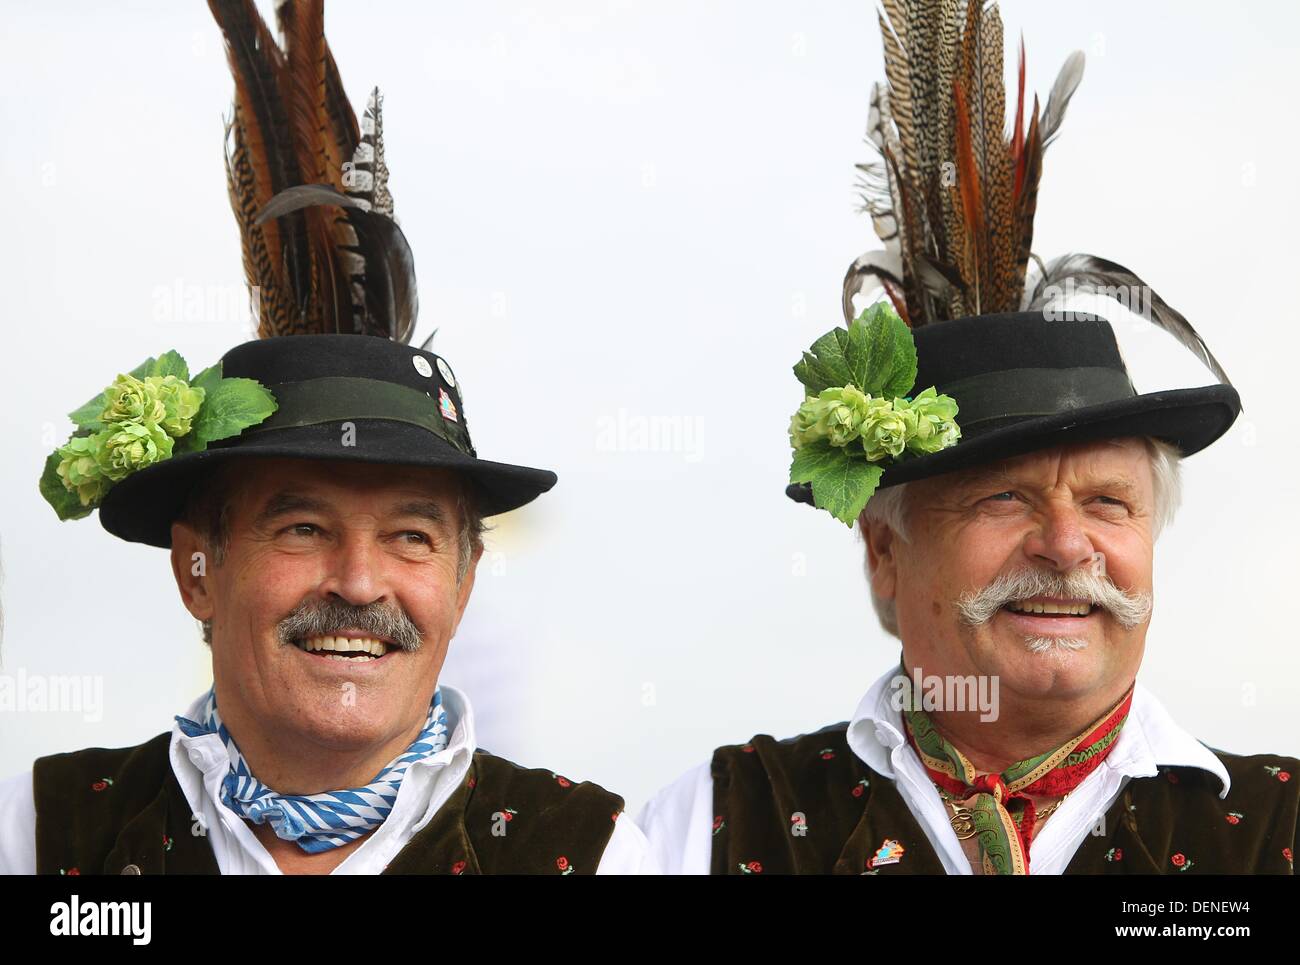 Cappelli tedeschi immagini e fotografie stock ad alta risoluzione - Alamy